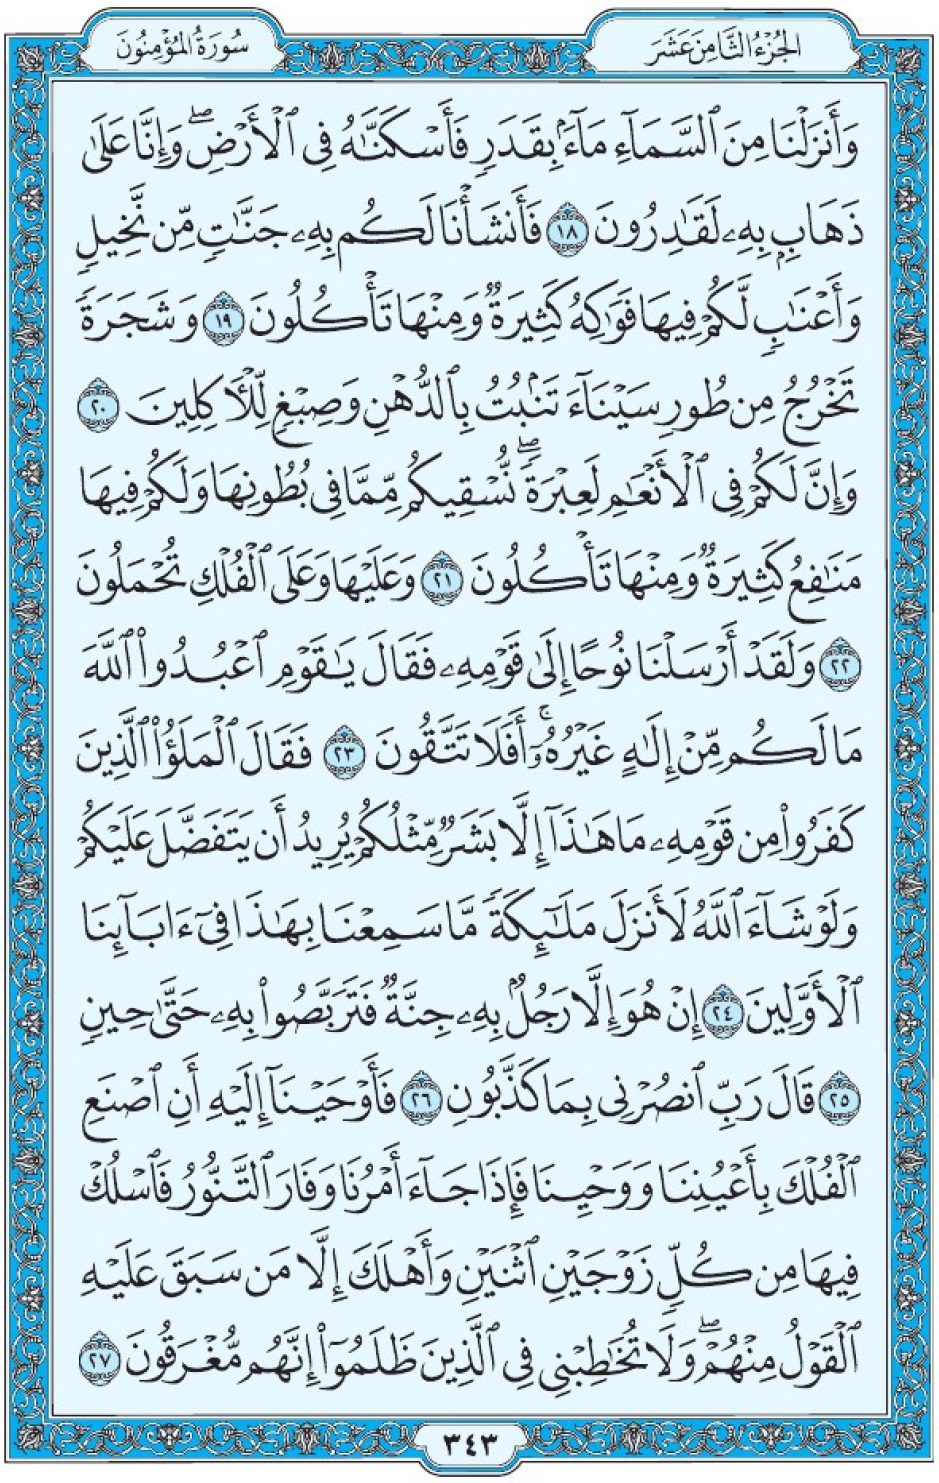 Коран Мединский мусхаф страница 343, Аль-Муъминун, аят 18-27